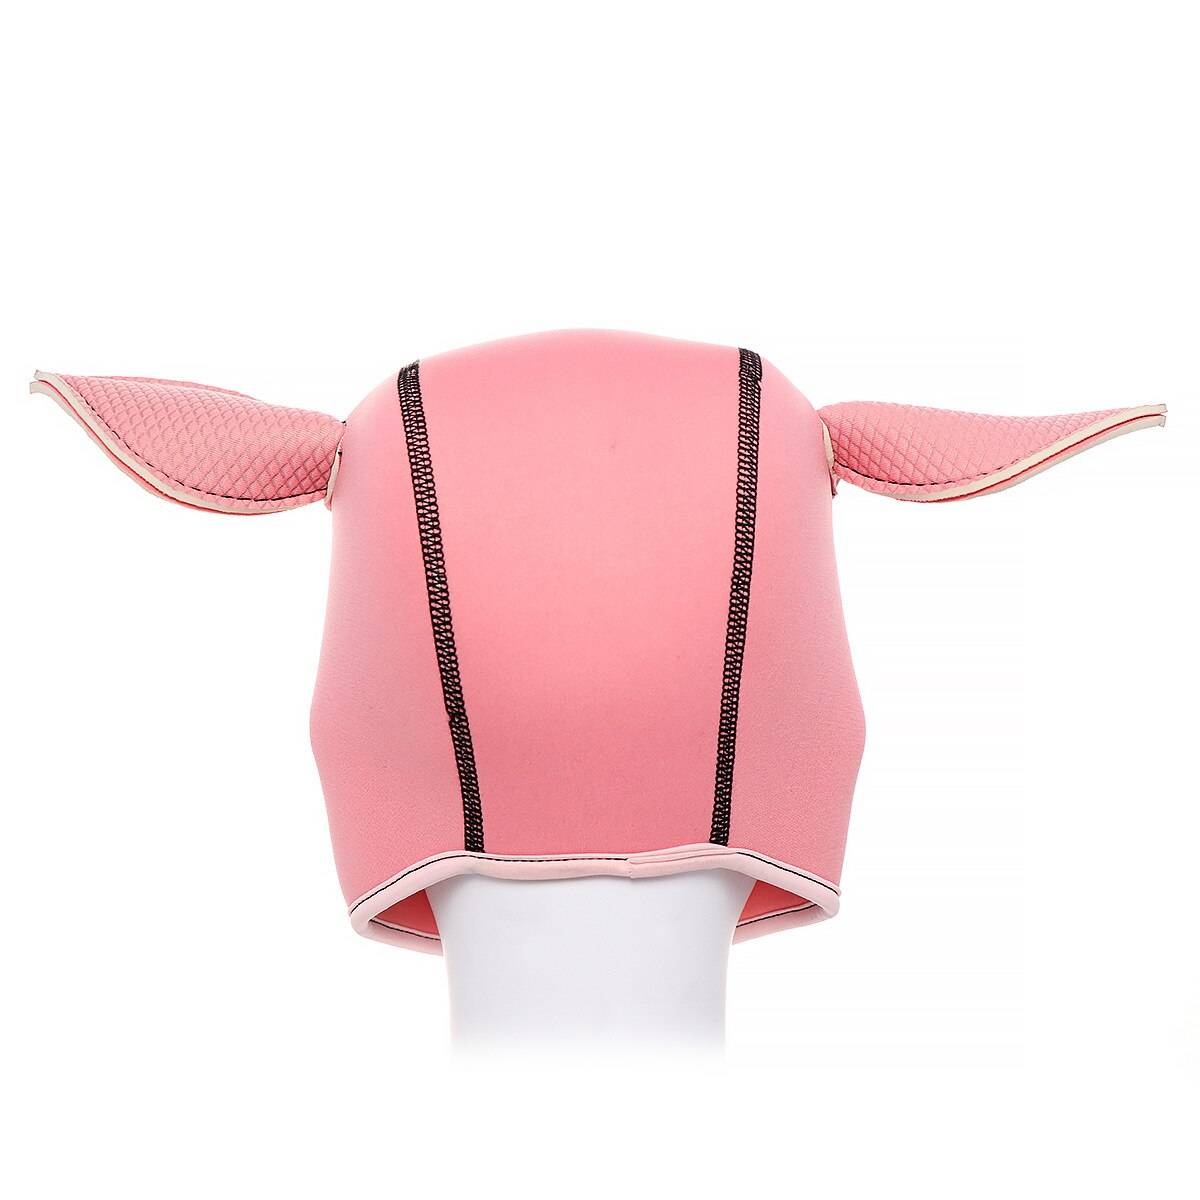 Máscara de personagem e cosplay de porco, capuz com orelhas e capuz, brinquedo erótico para adultos, produtos sexuais